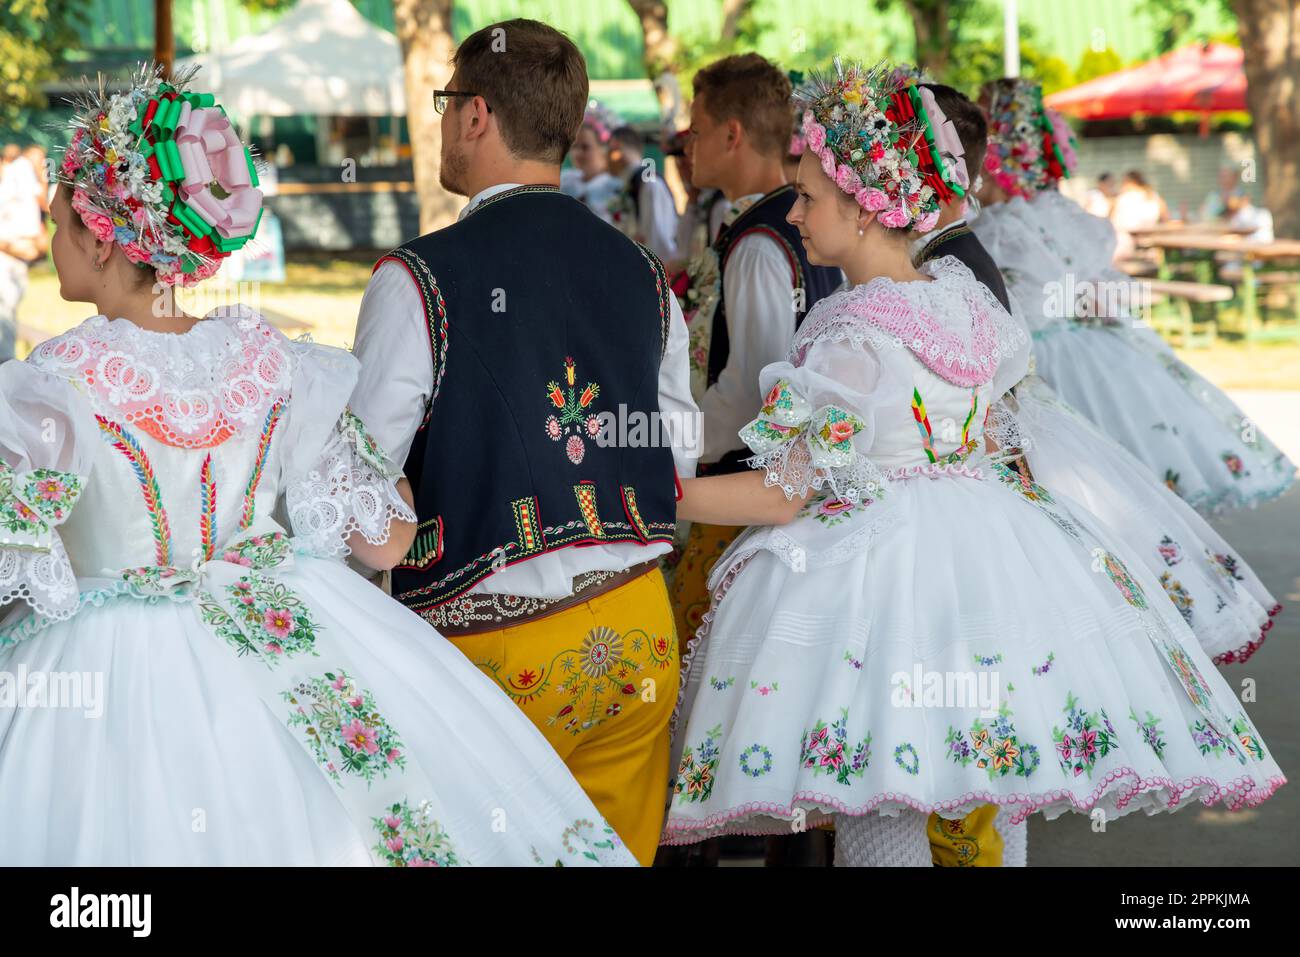 Rakvice, République tchèque - juin 2021. Belles femmes et hommes danseurs dans une célébration.Fête morave traditionnelle. Jeunes en parade vêtus de costumes folkloriques traditionnels moraves. Banque D'Images